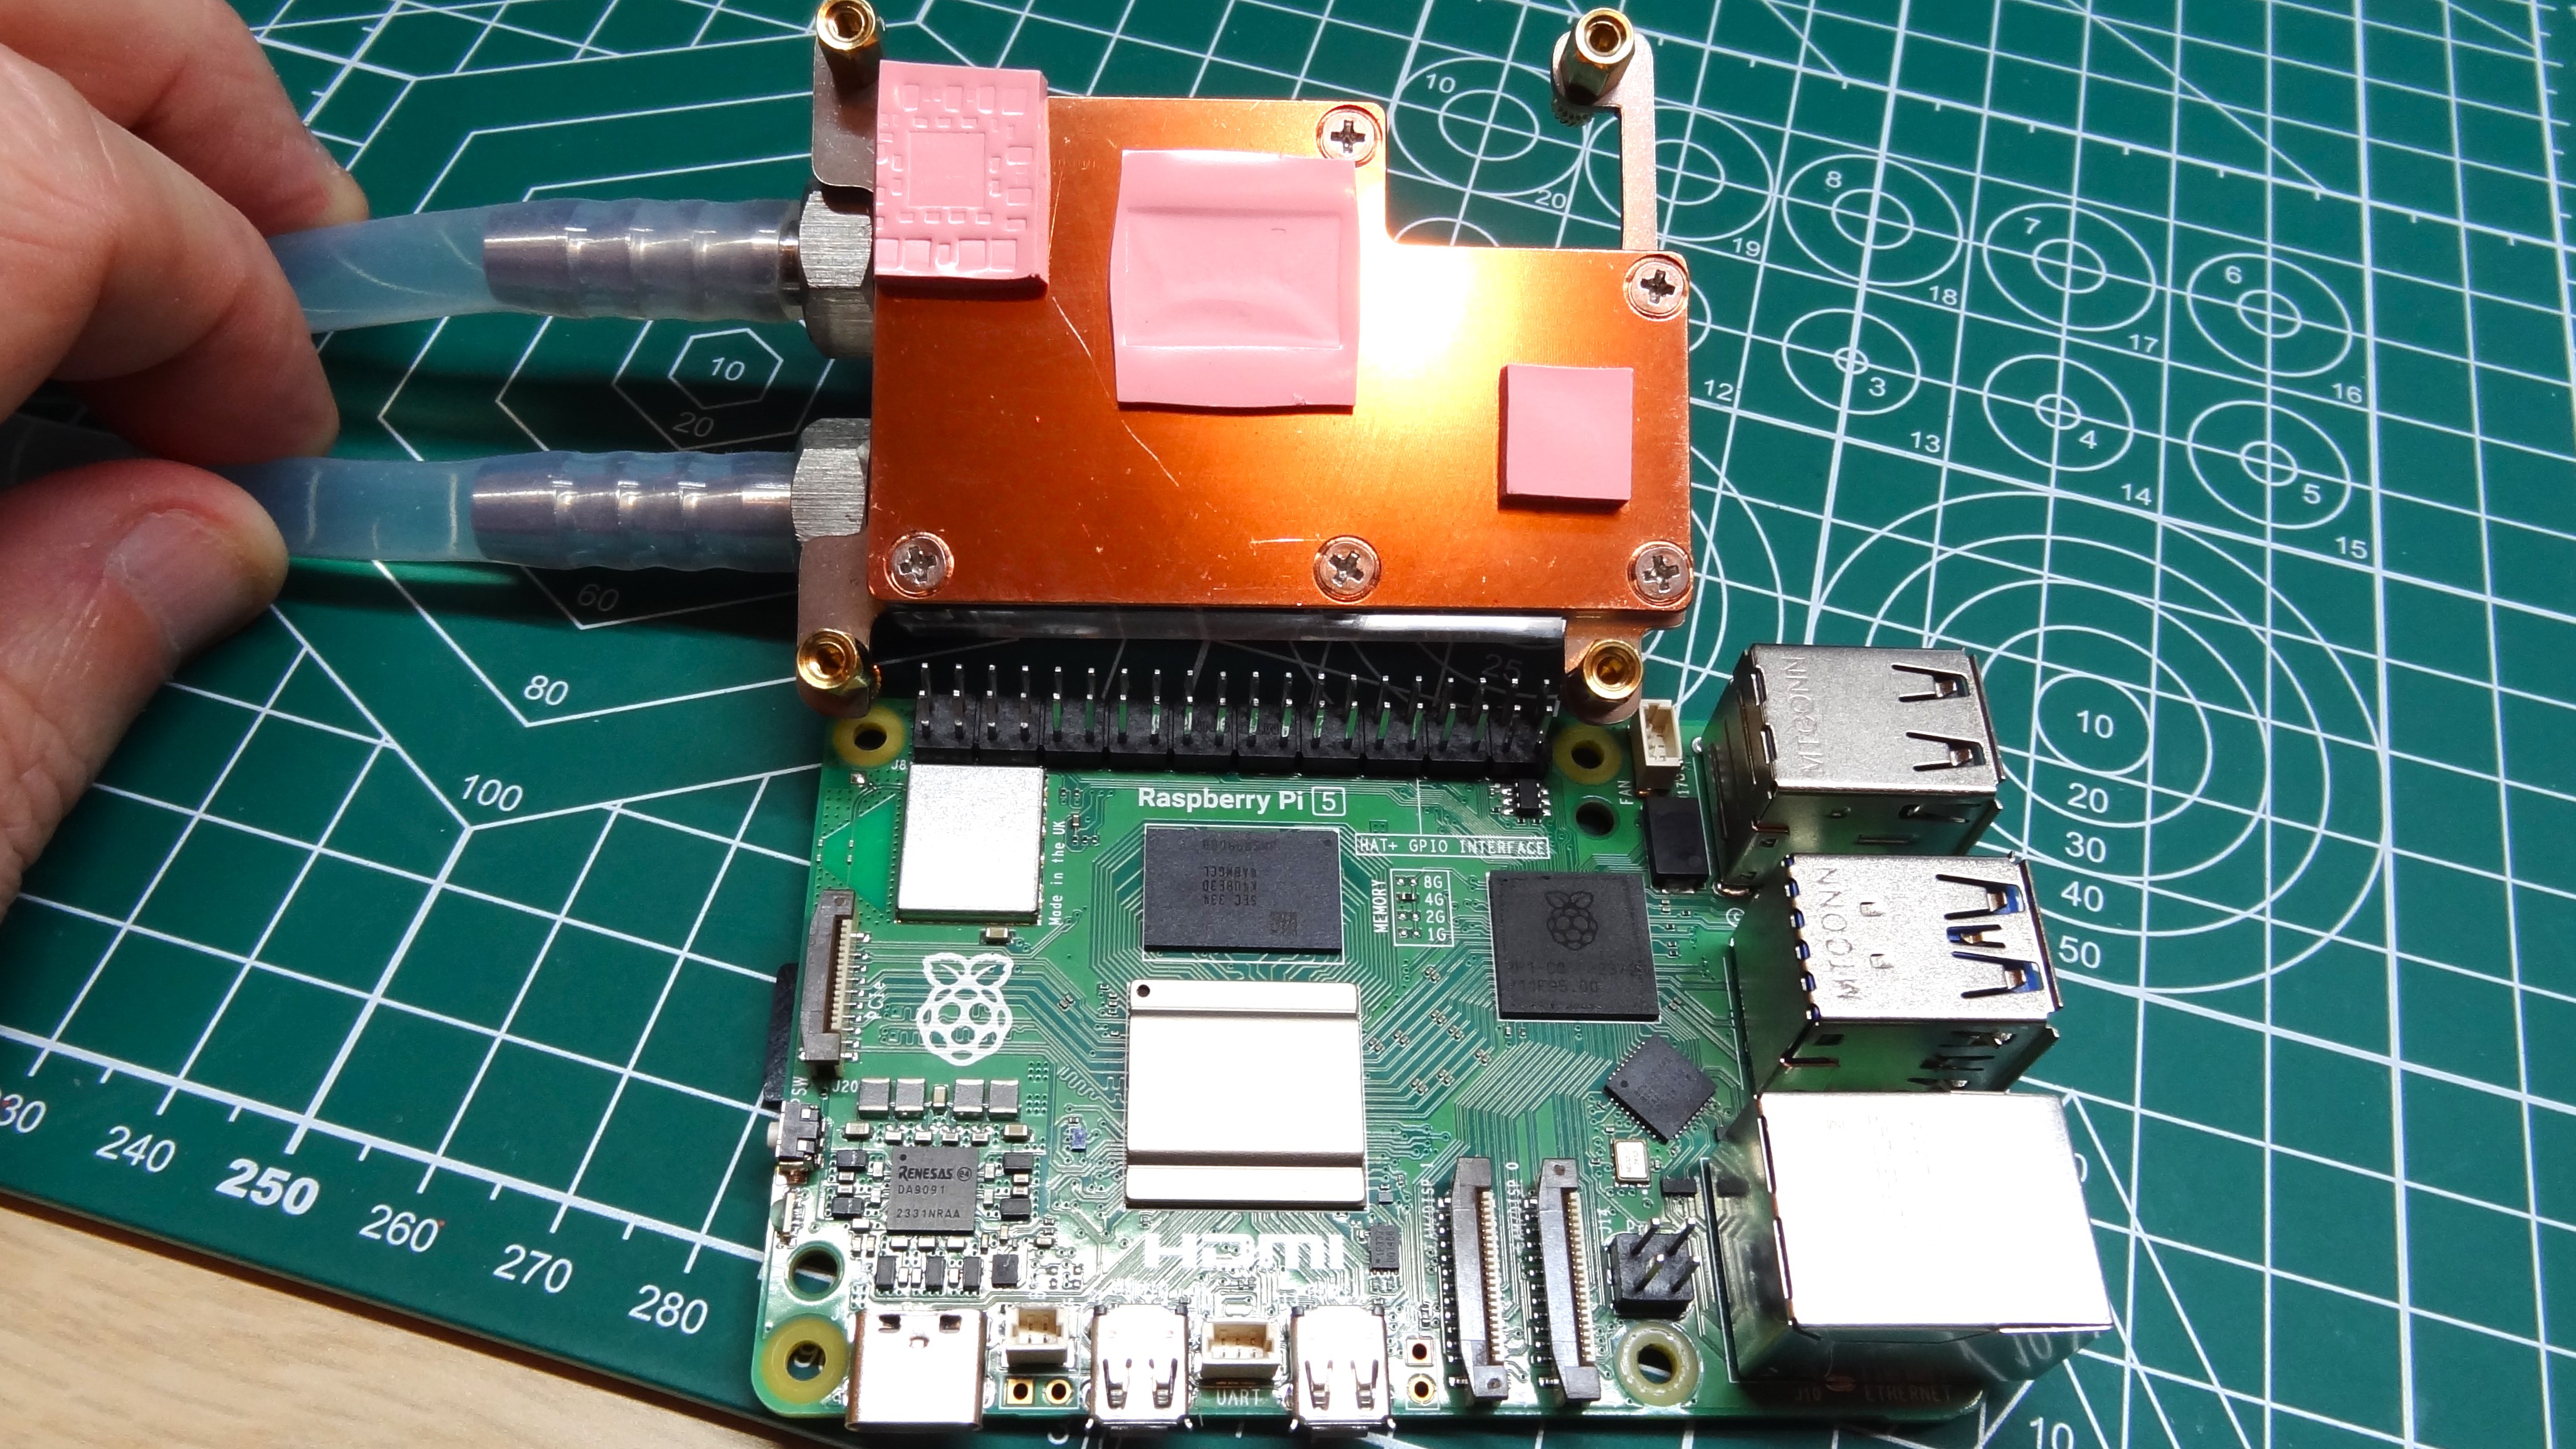 Kit Pendingin Air untuk Raspberry Pi 5